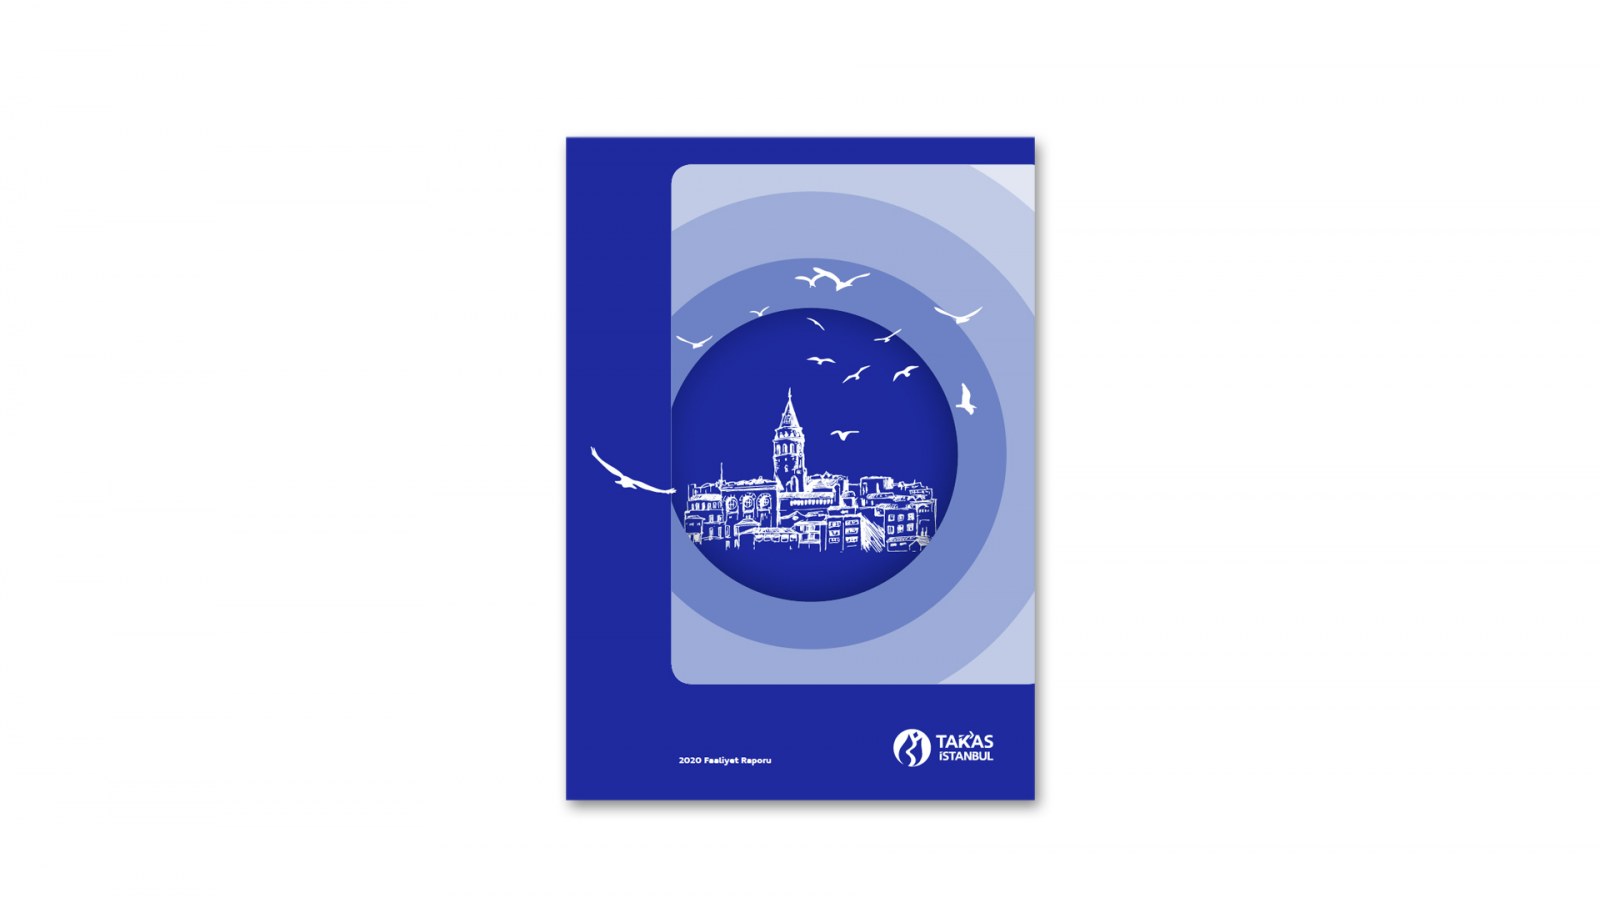 TAKASBANK / 2020 Faaliyet Raporu / 2020 Annual Report